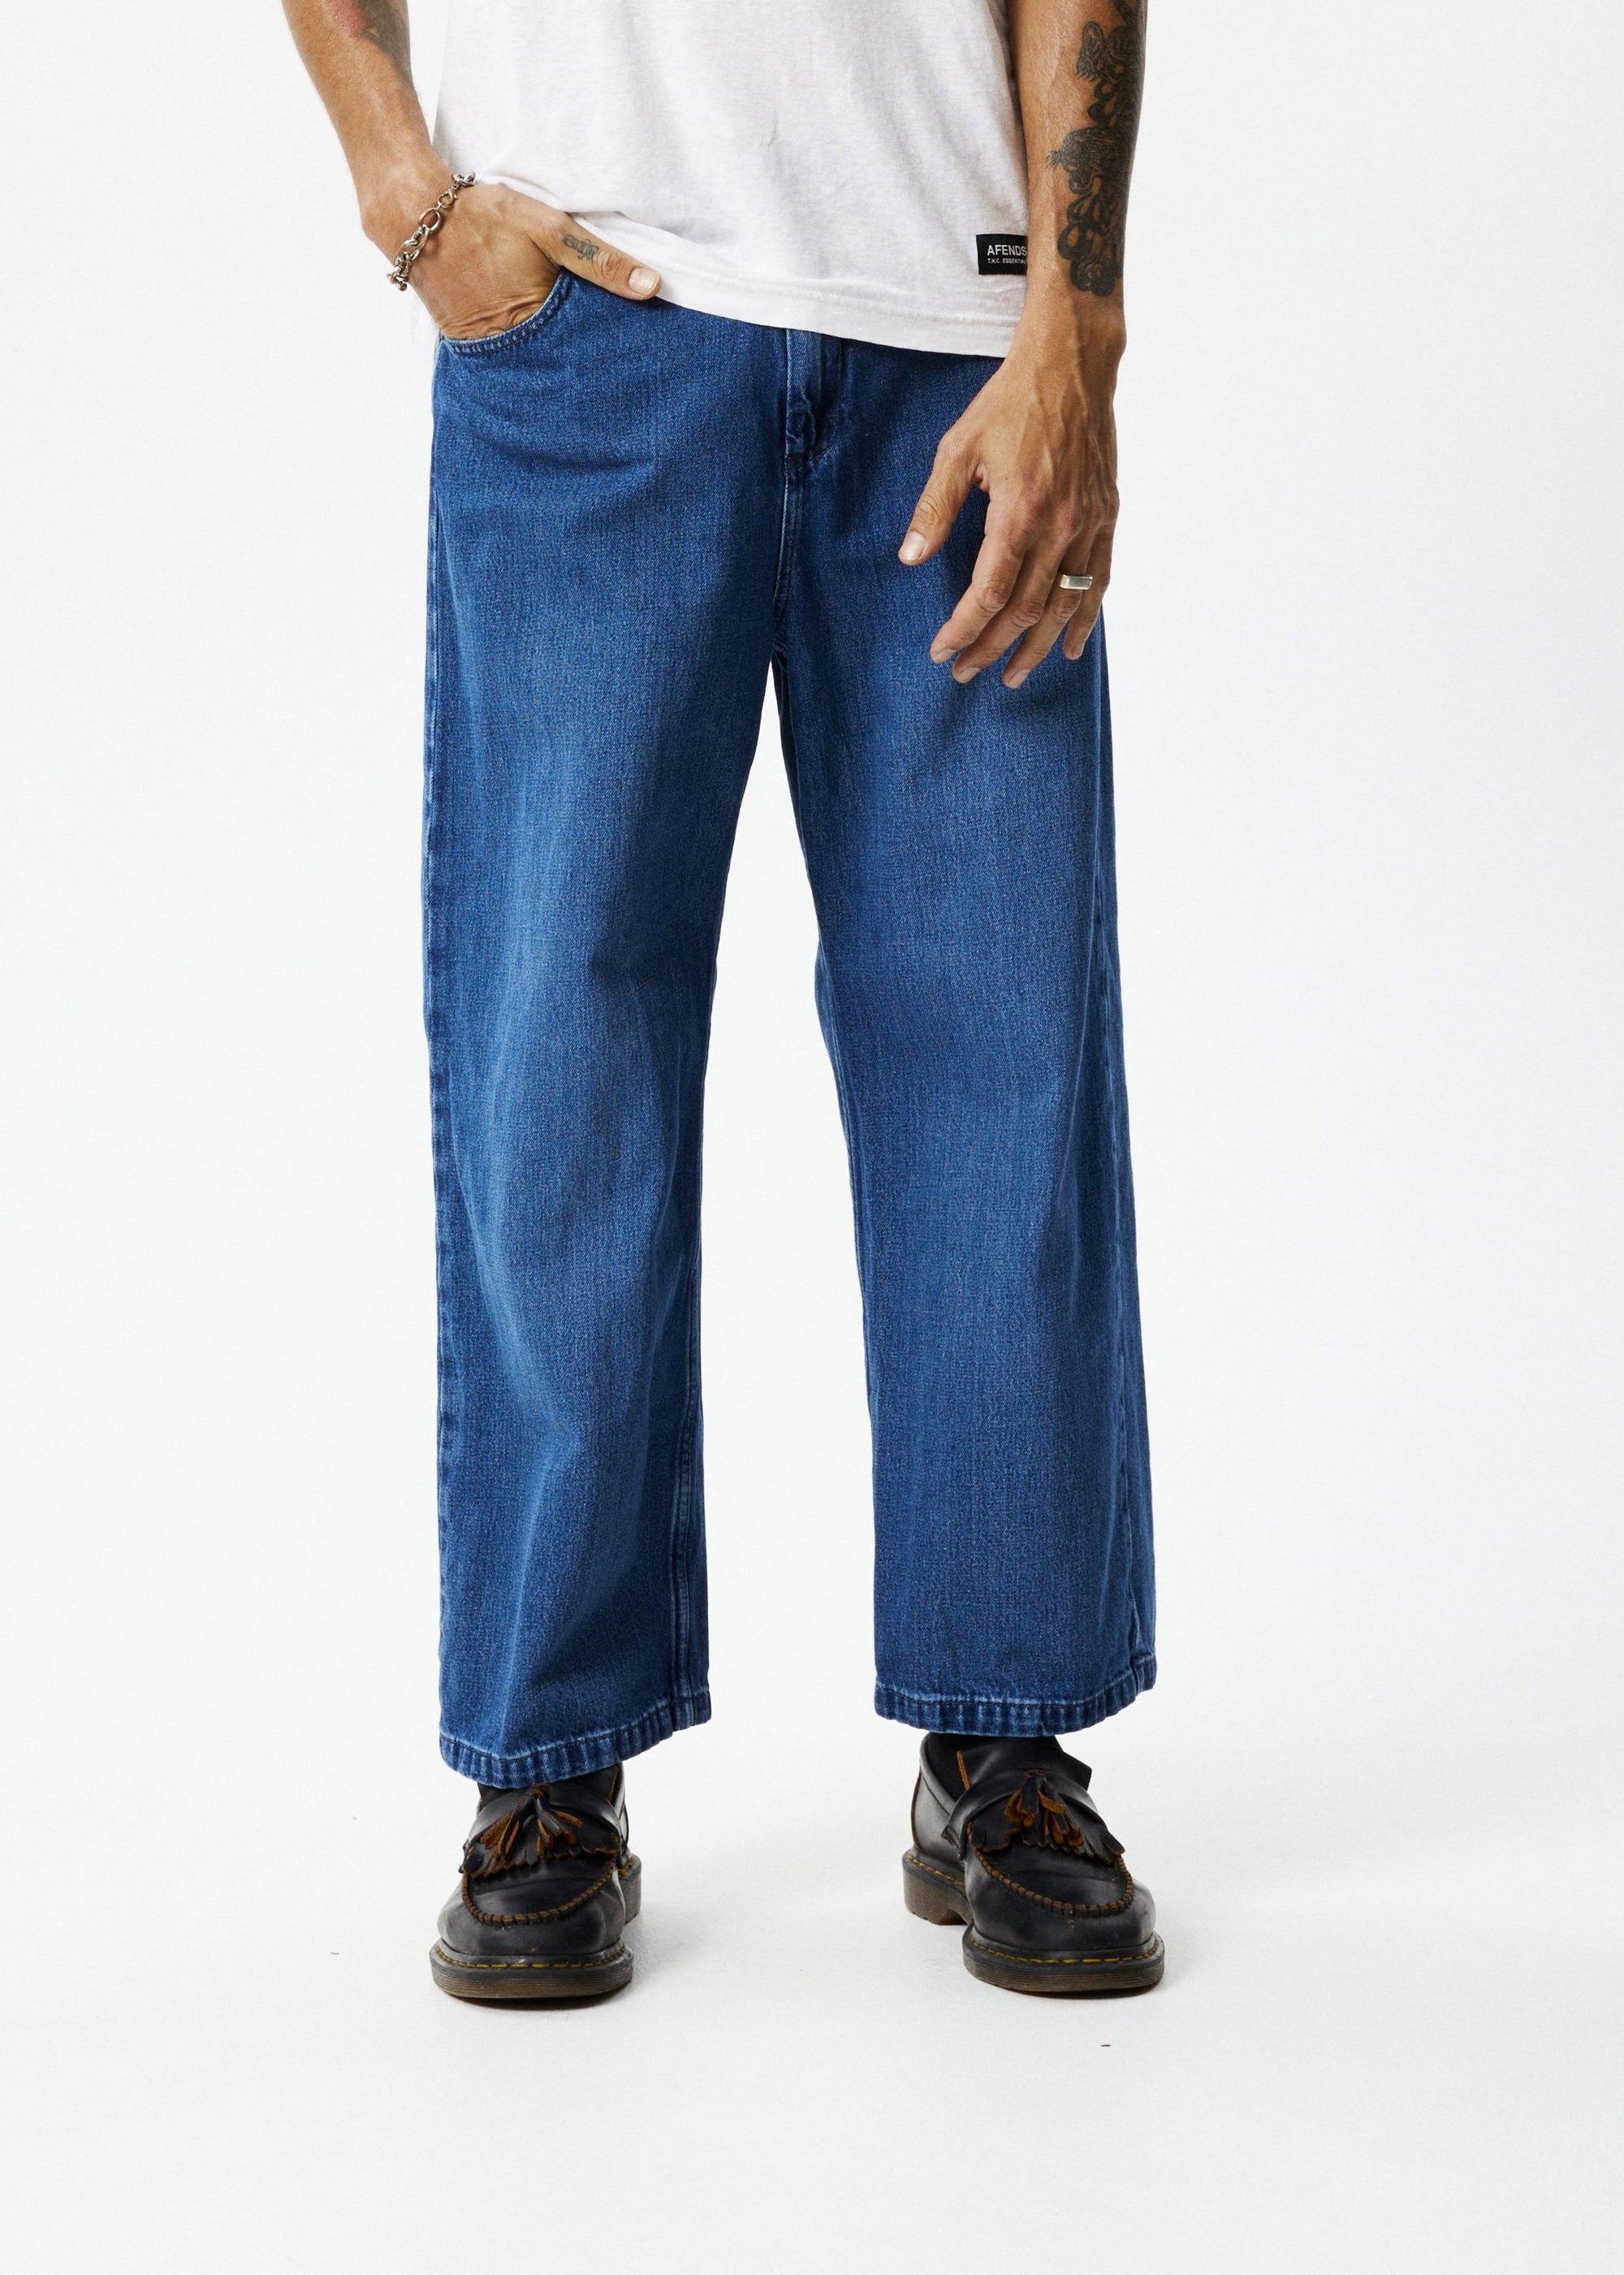 Authentic Vintage Japanese Denim Jeans (33